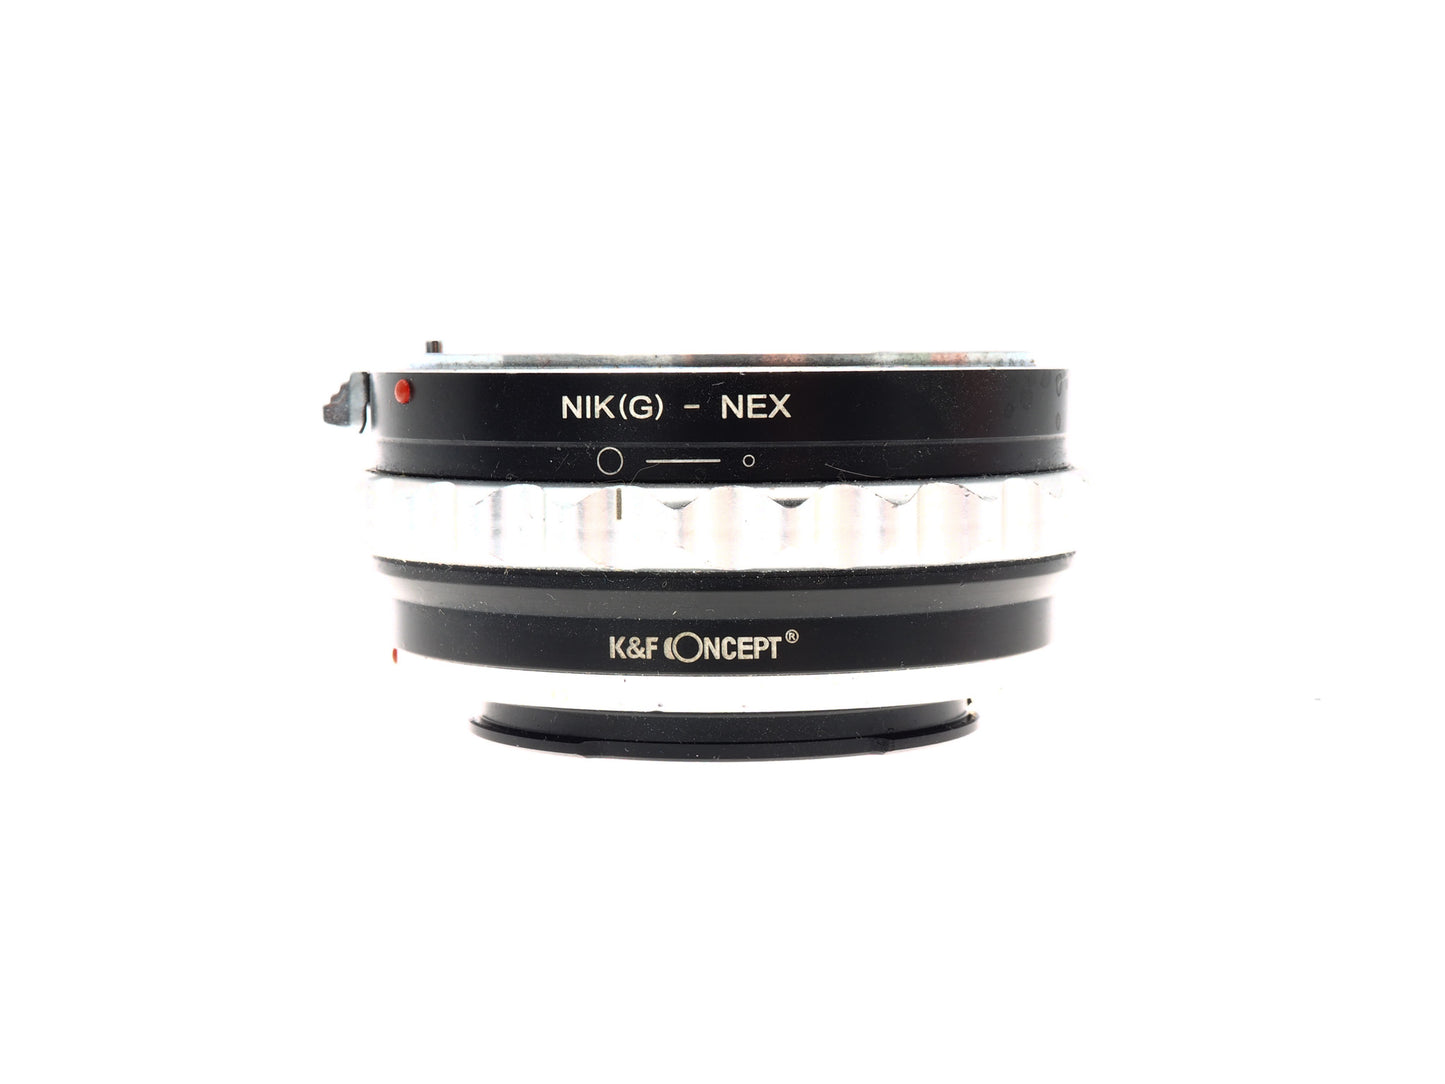 K&F Concept Nikon F(G) - Sony E/FE - Lens Adapter